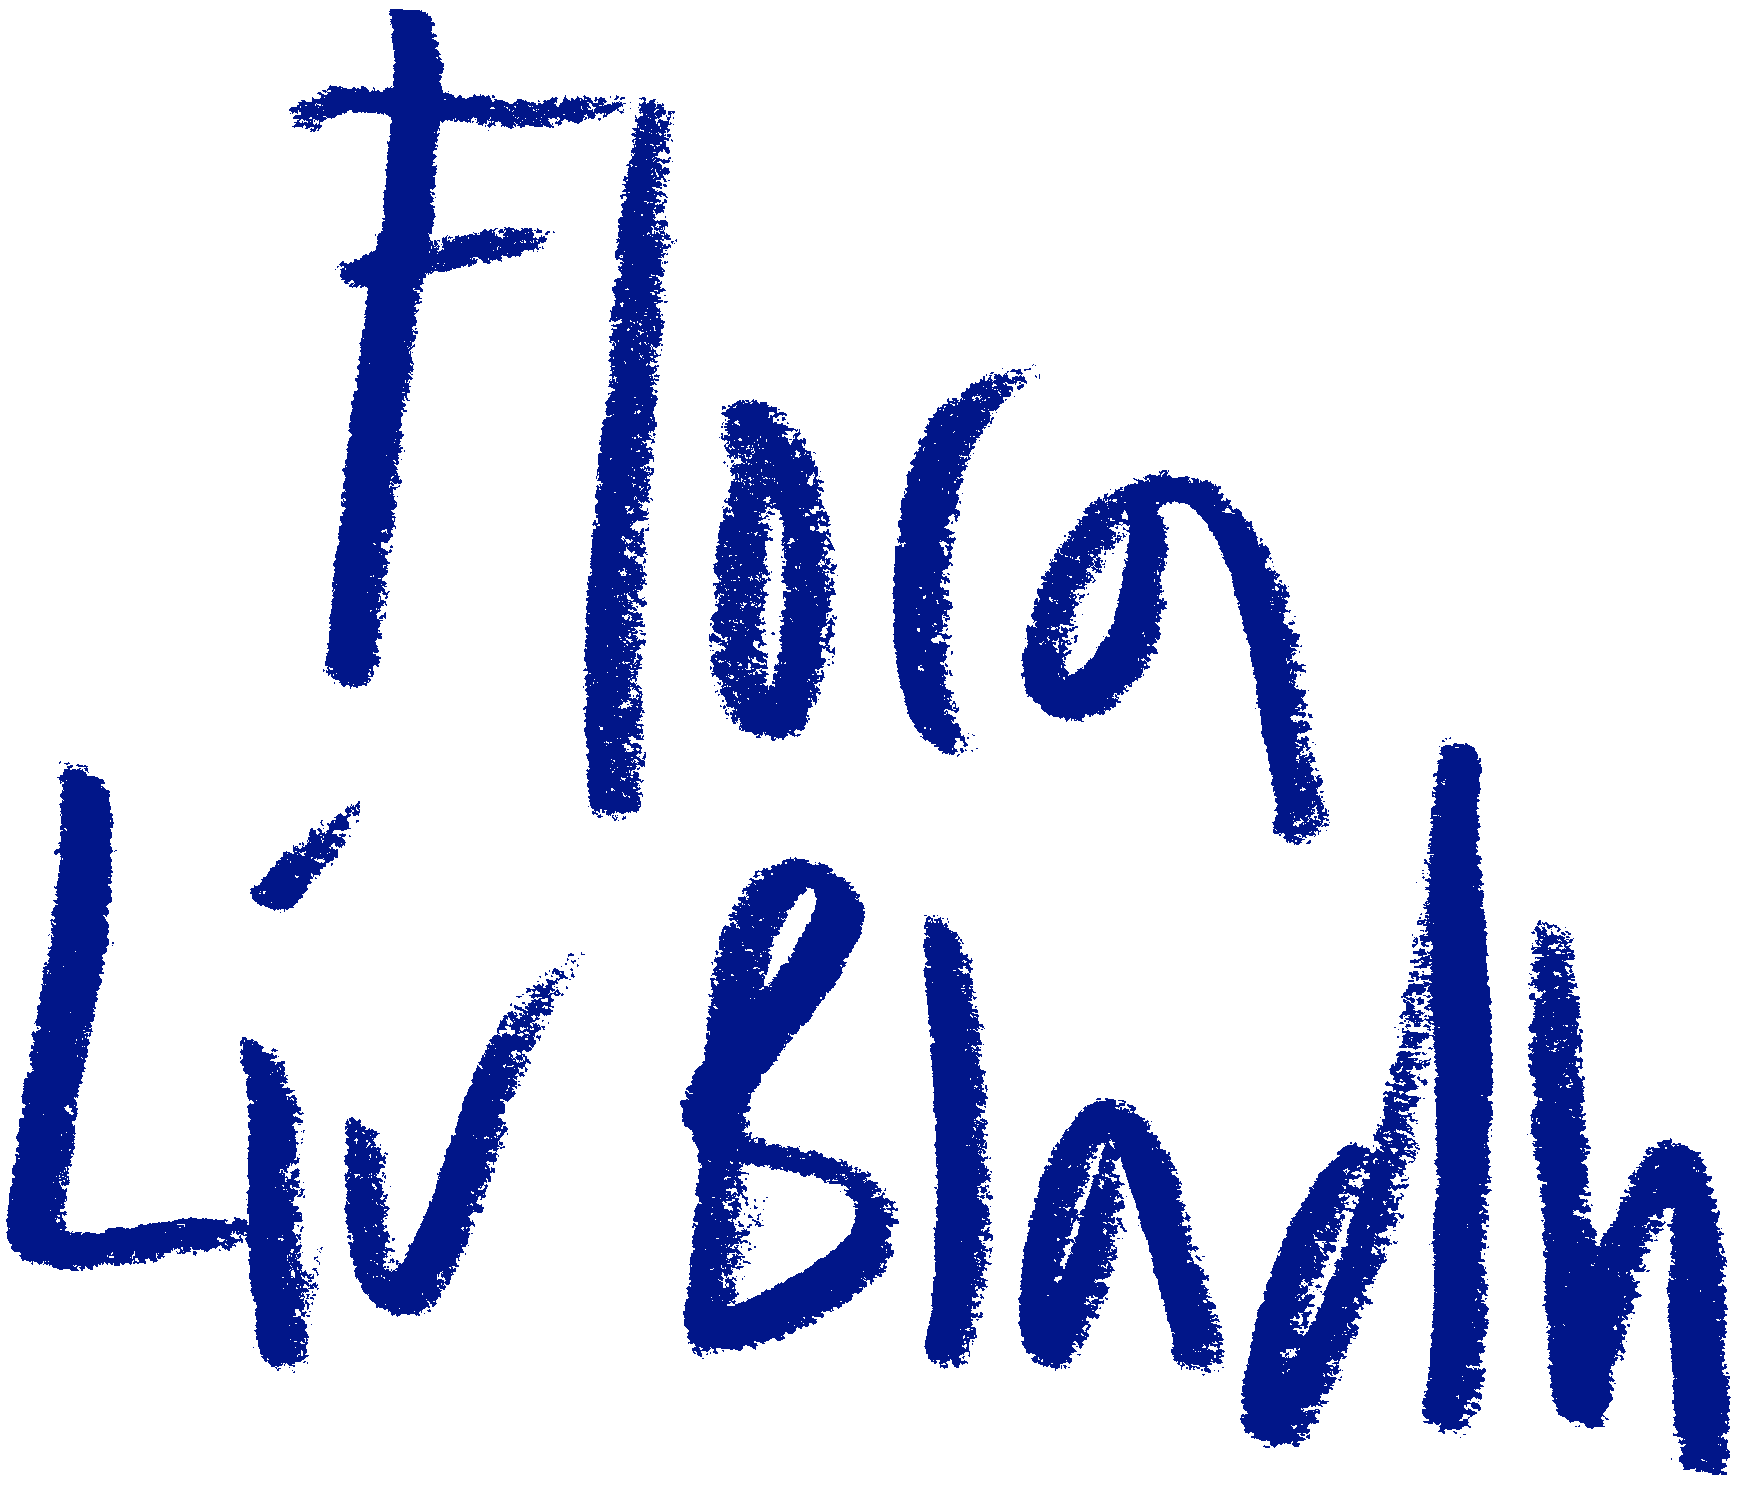 Flora Liv Bladh